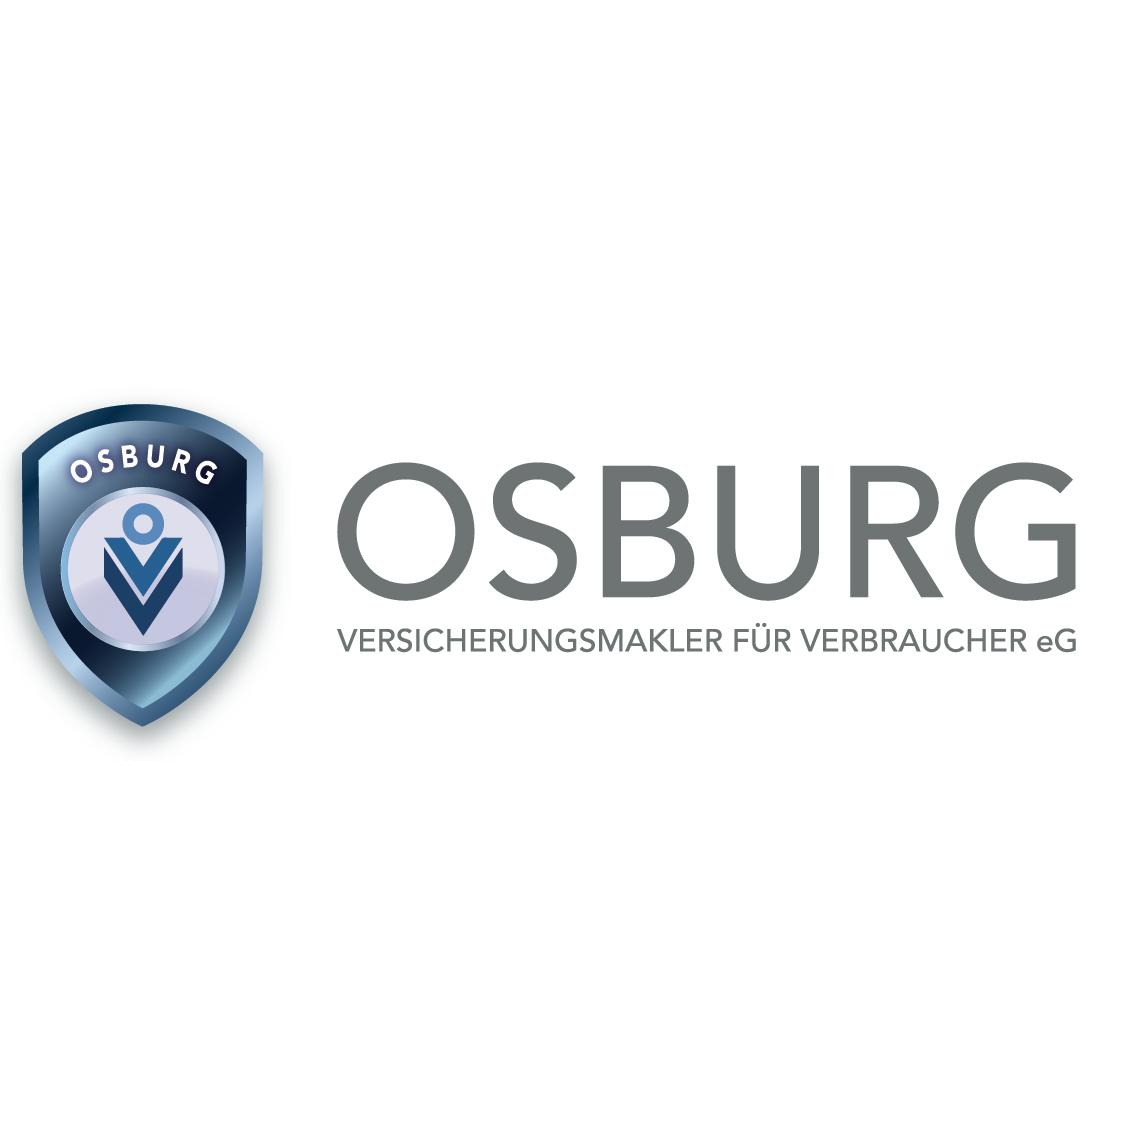 OSBURG - Versicherungsmakler für Verbraucher eG in Berlin - Logo